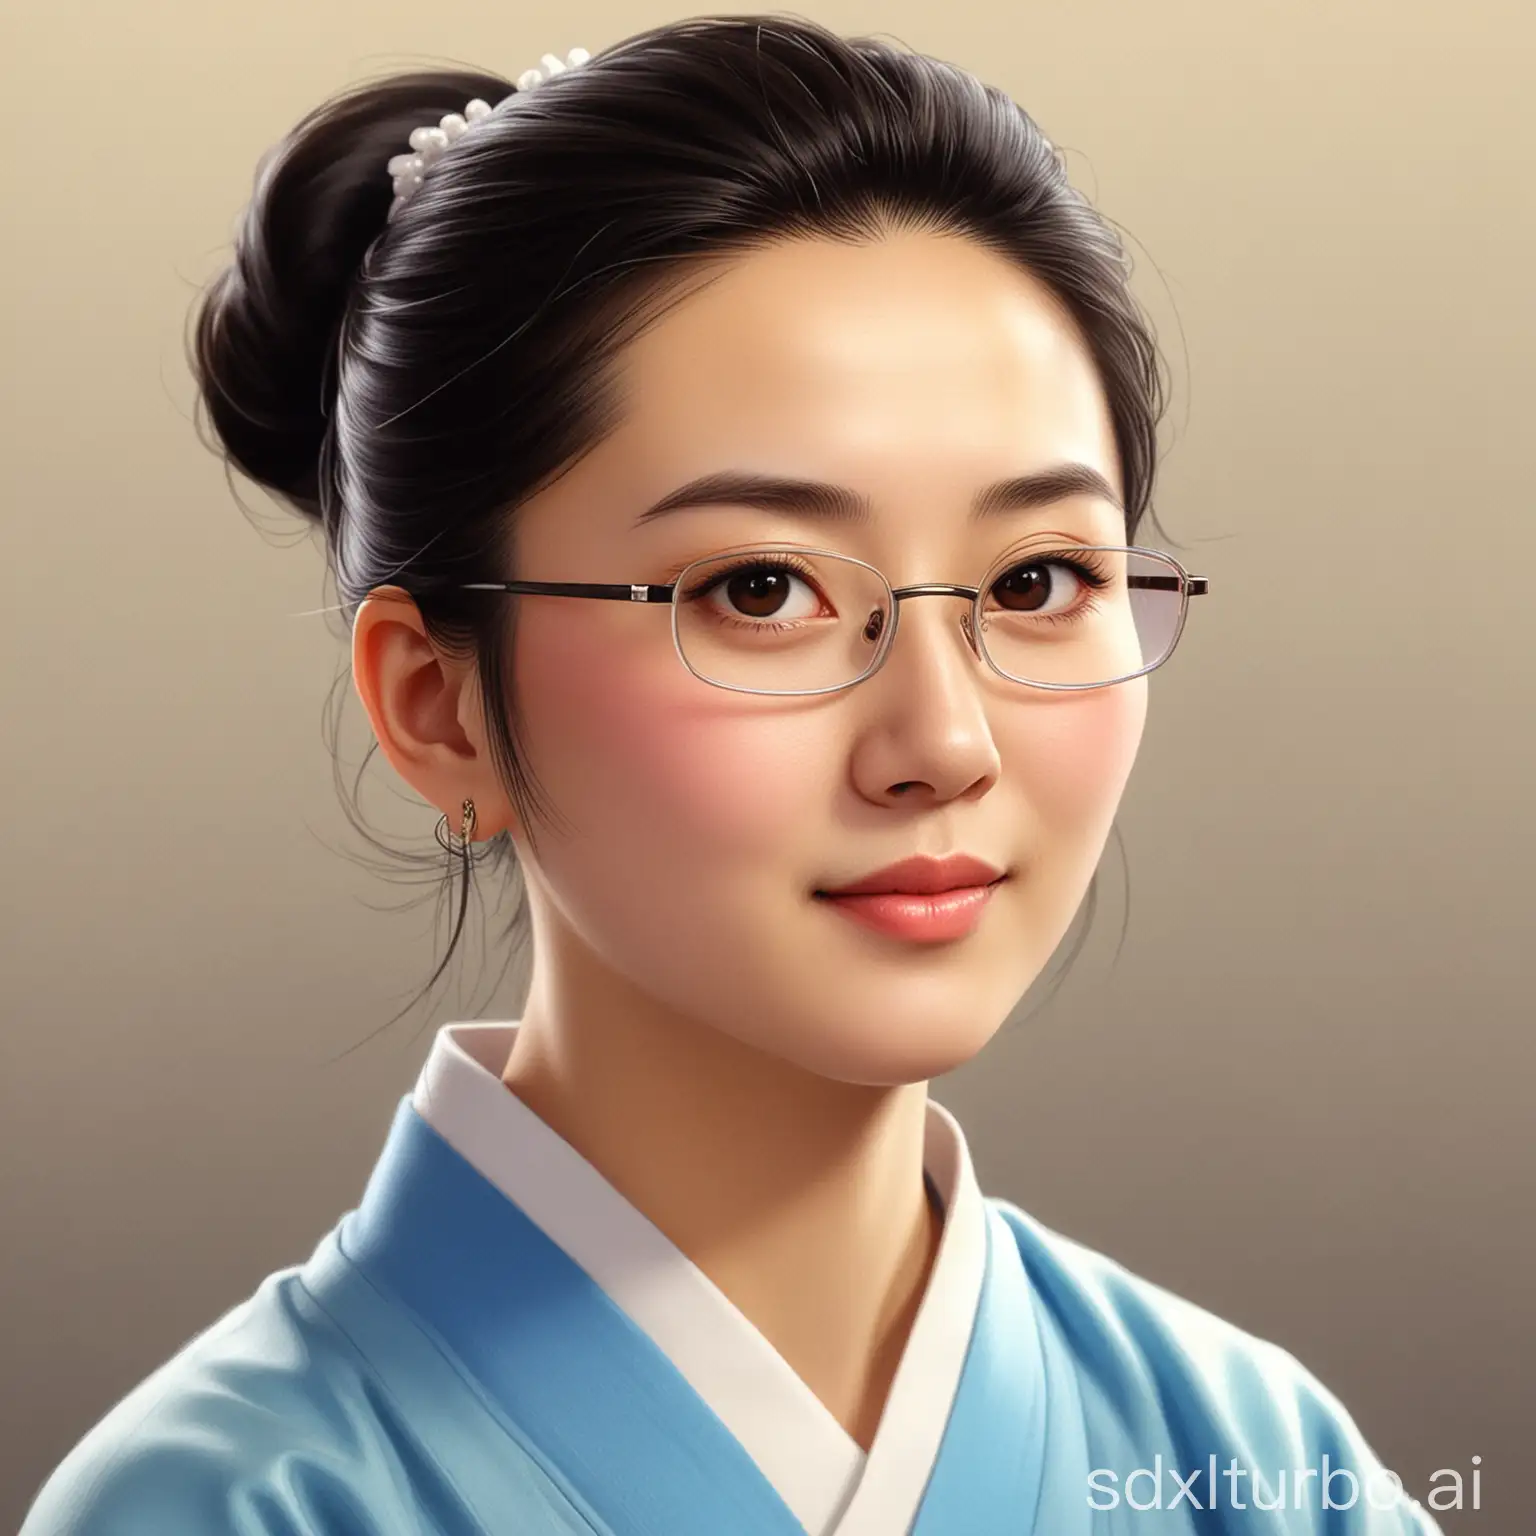 Cheerful-Cartoon-Portrait-of-Lin-Daiyu